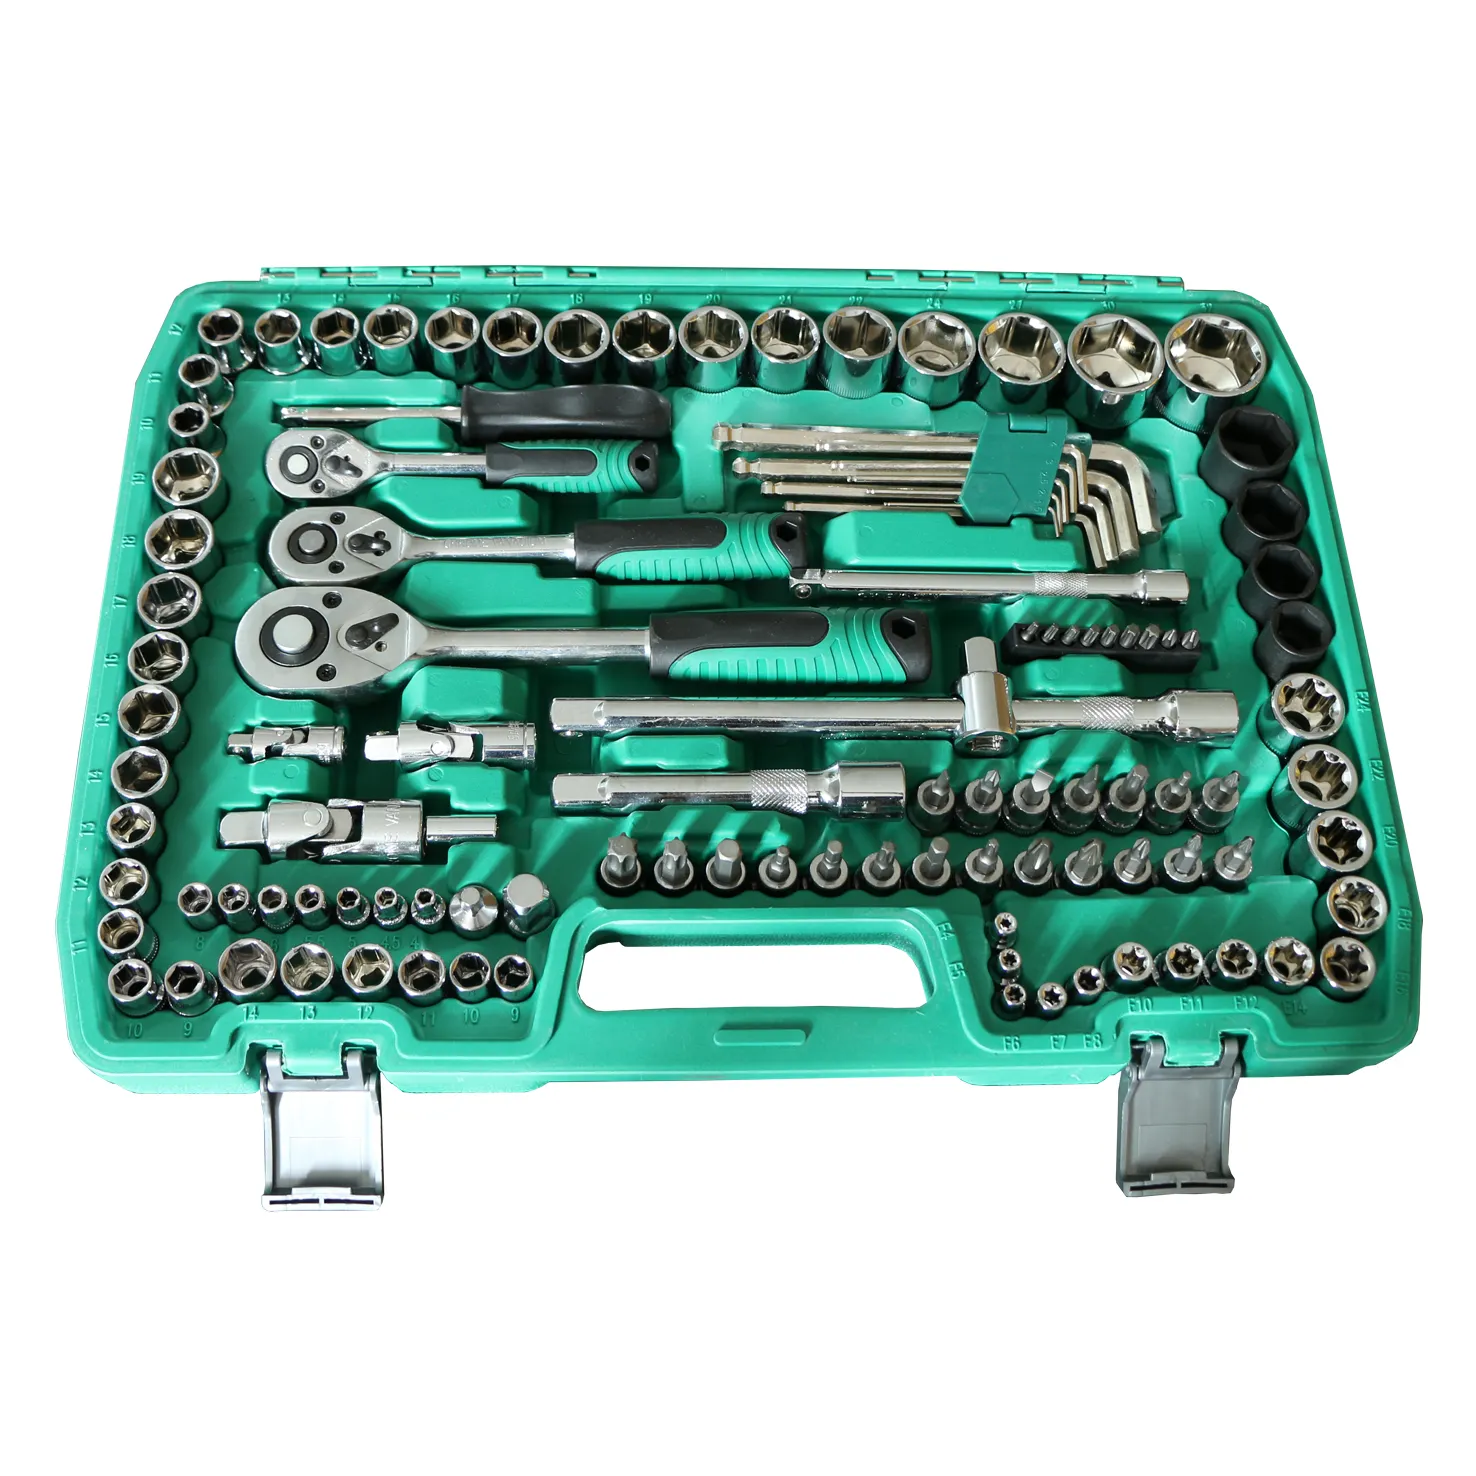 151PCS Industrial Grade Multi-Functional Manual Home Auto Repair Hardware Tool Kit